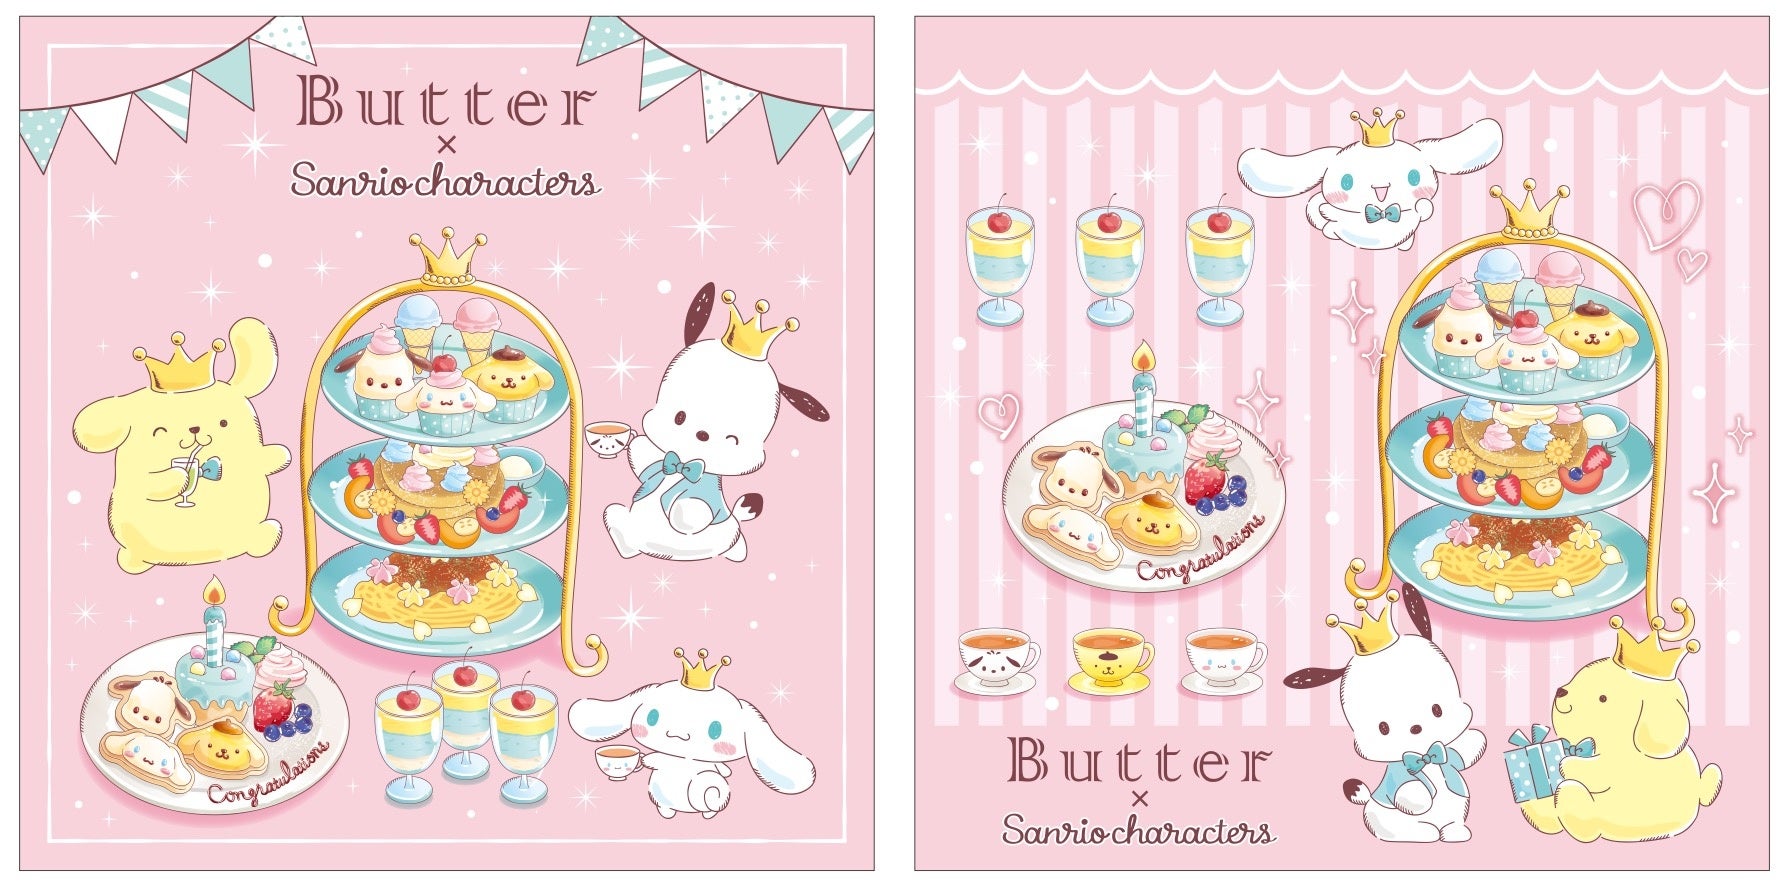 【パンケーキ専門店 Butter × サンリオキャラクターズ】「選ぶ楽しみ」をテーマに、サンリオの人気キャラクターがButterとのコラボレーションカフェとして新登場。3月16日（水）より販売開始